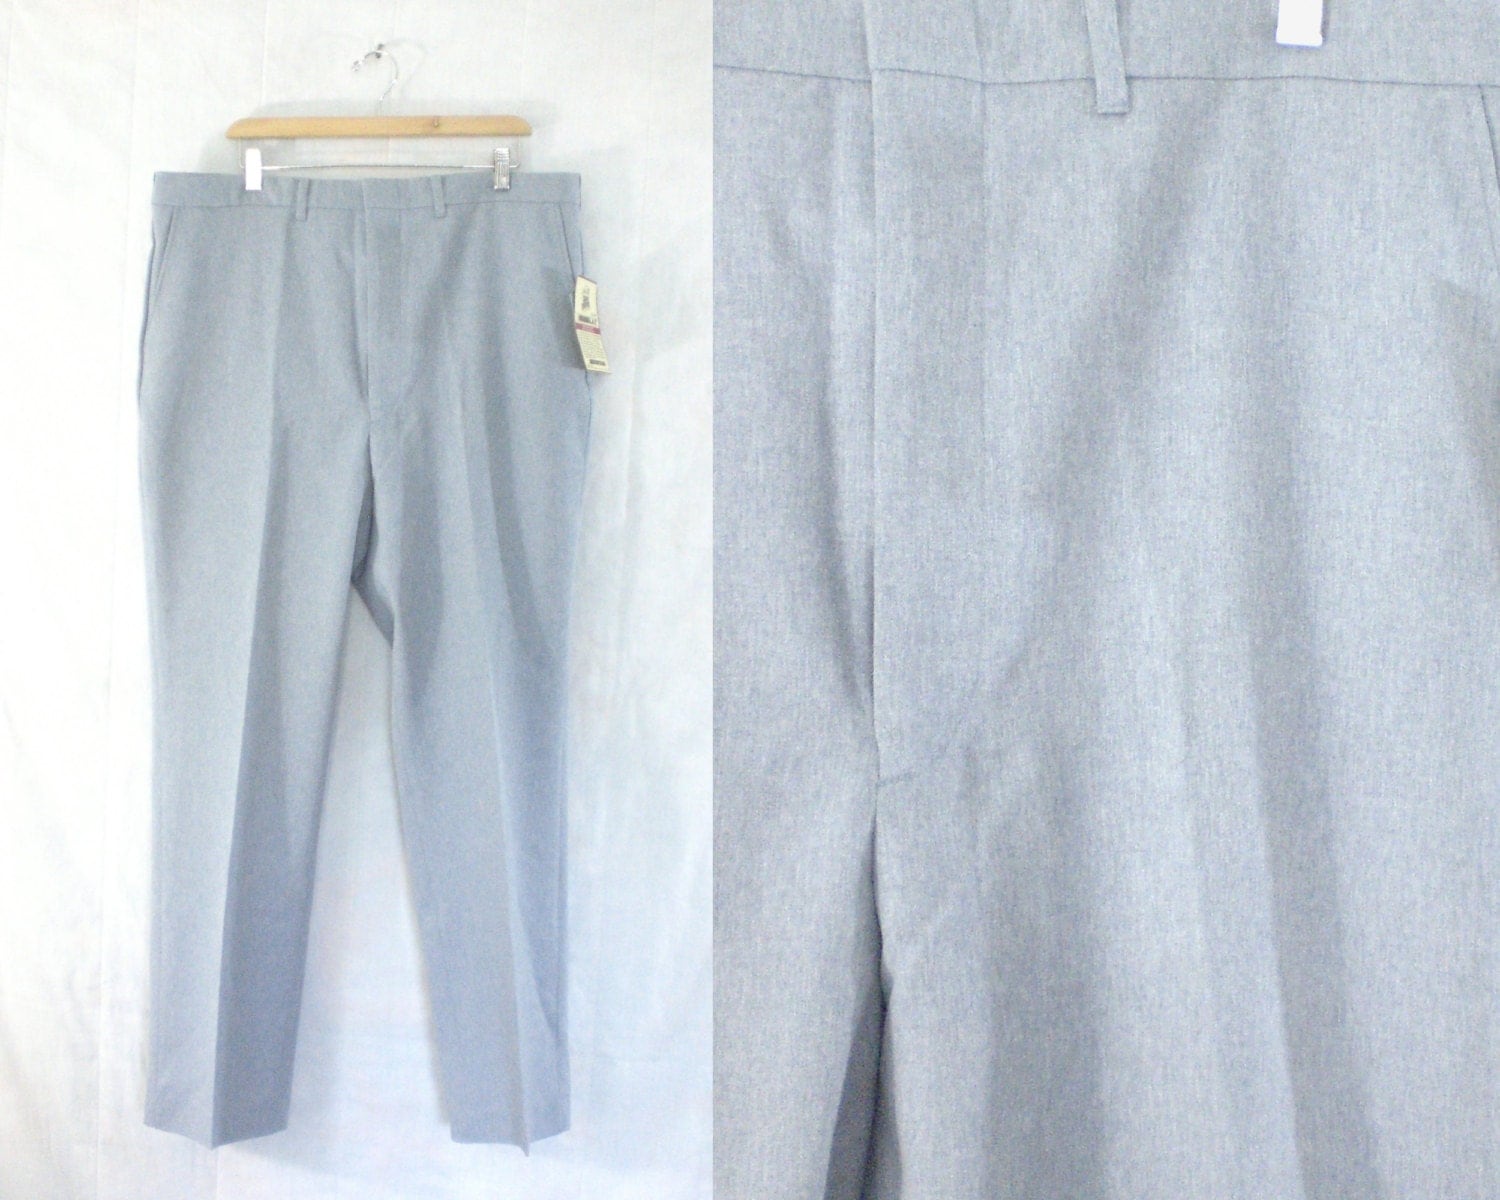 mens dress pants size 40x32. 60s steel blue pants. double knit